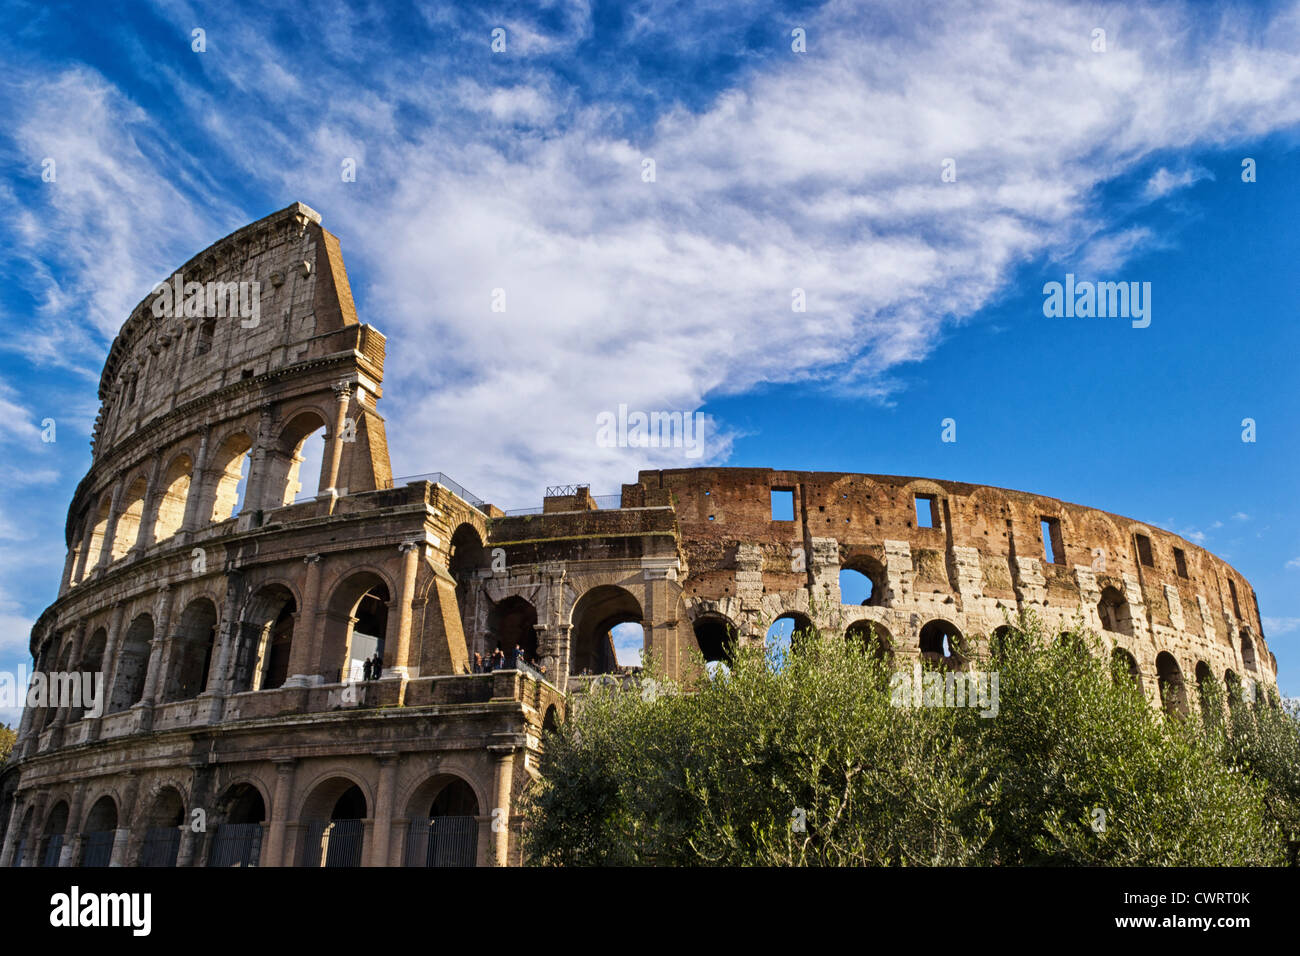 Le Colisée à Rome sur un fond nuageux. Banque D'Images